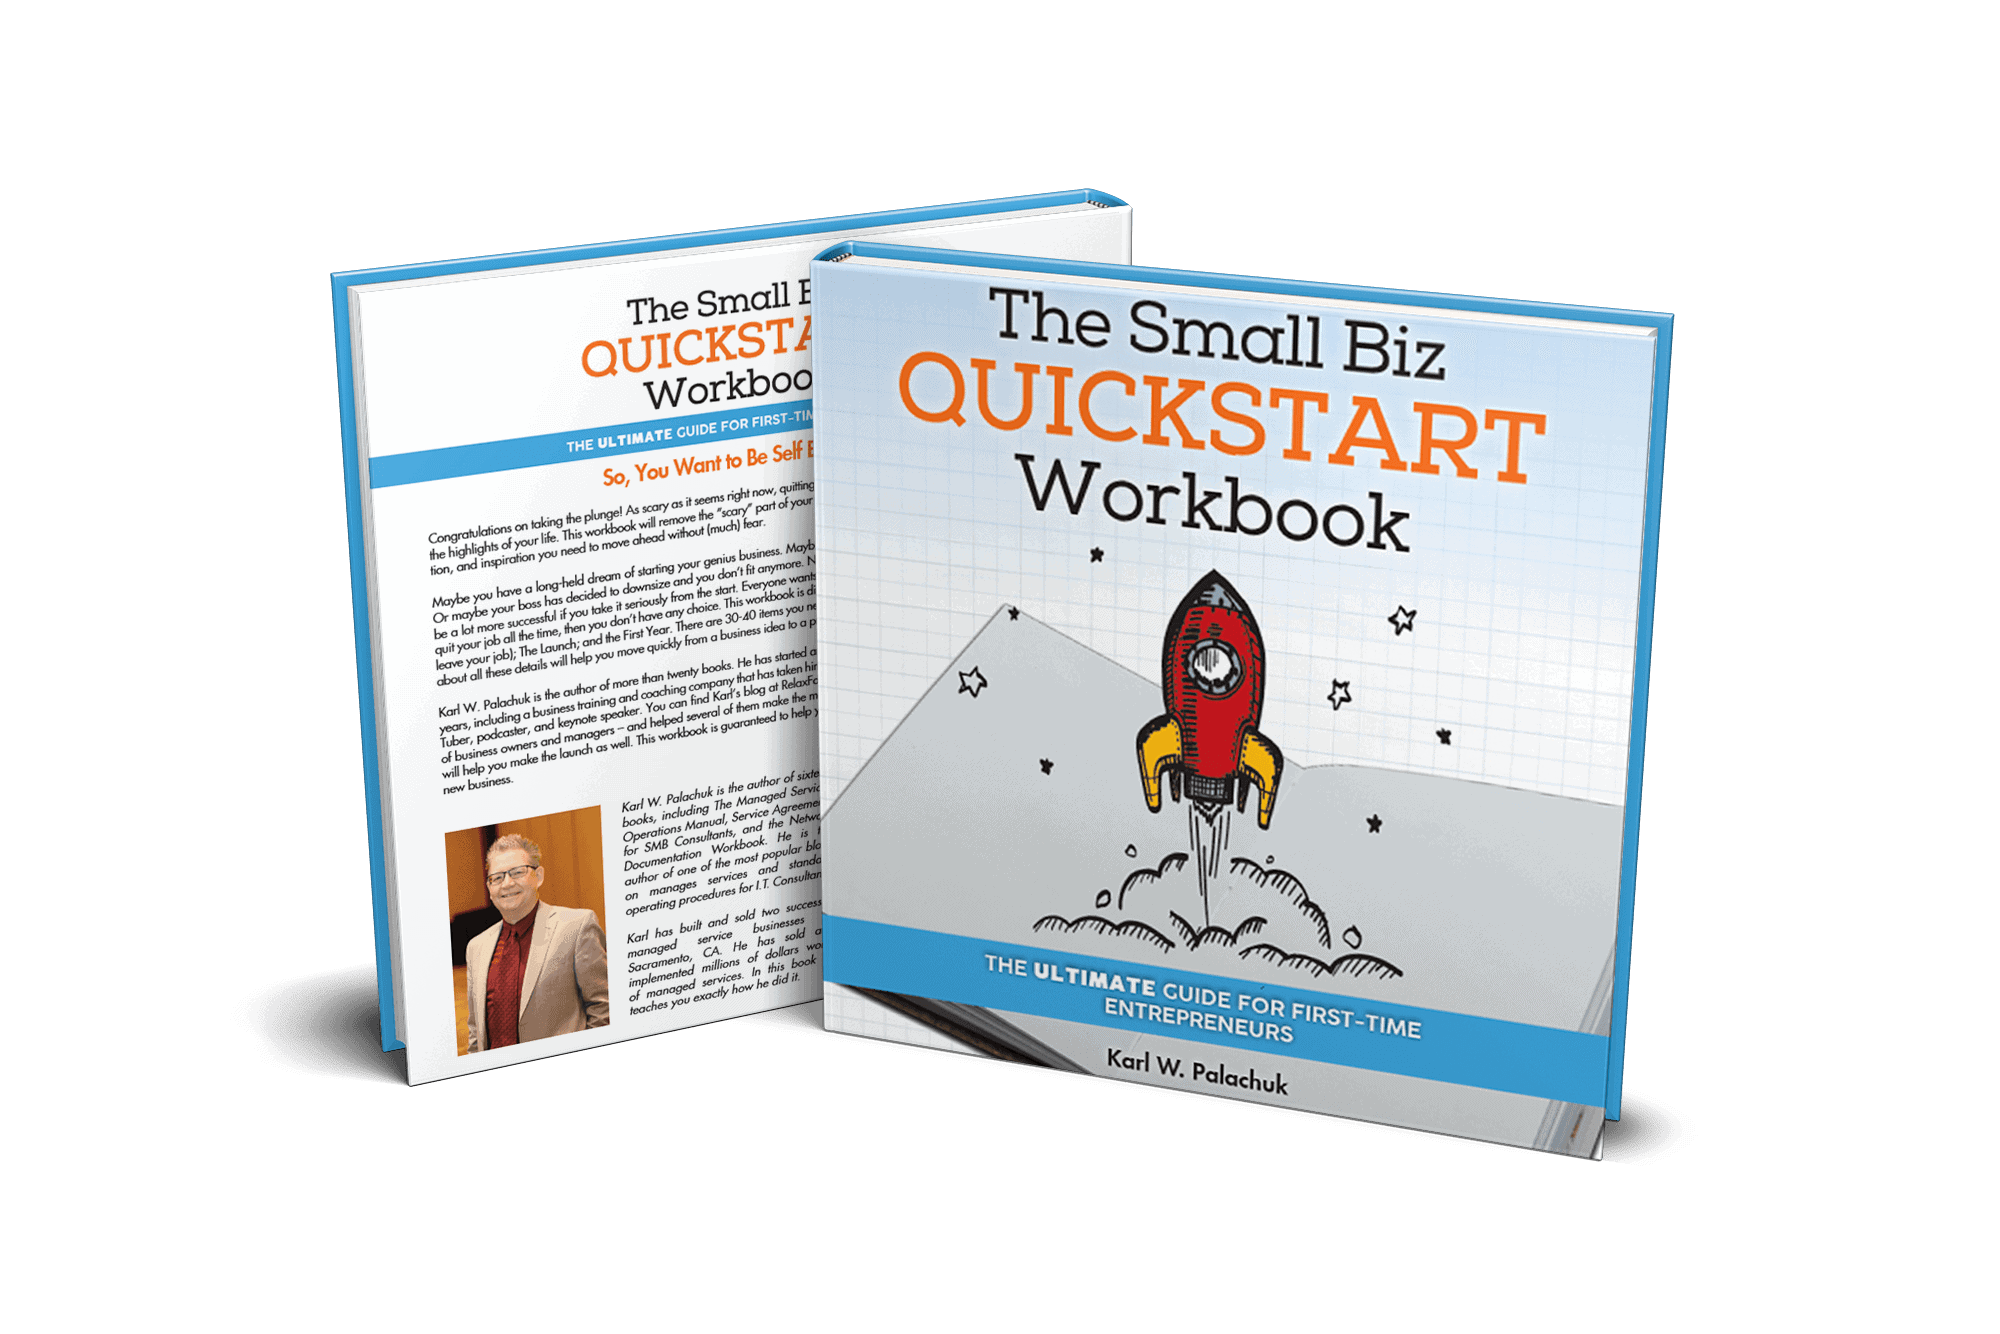 Small Biz Quickstart Workbook